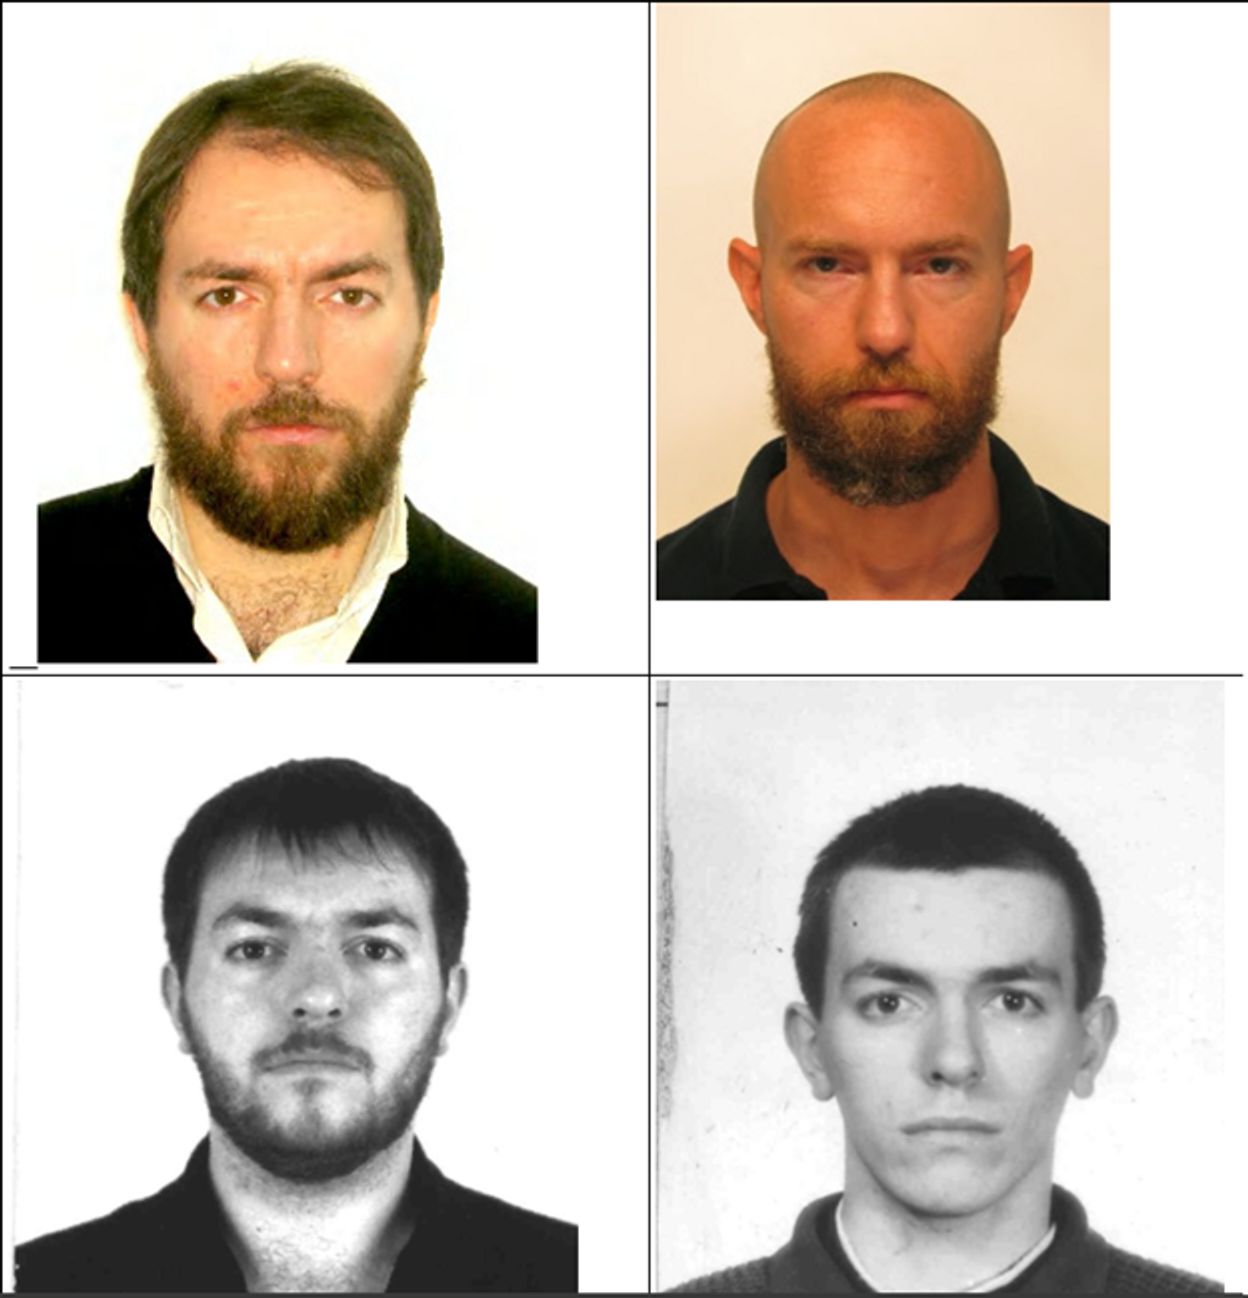 Марсалек (вверху справа) в паспортном файле Баязова 